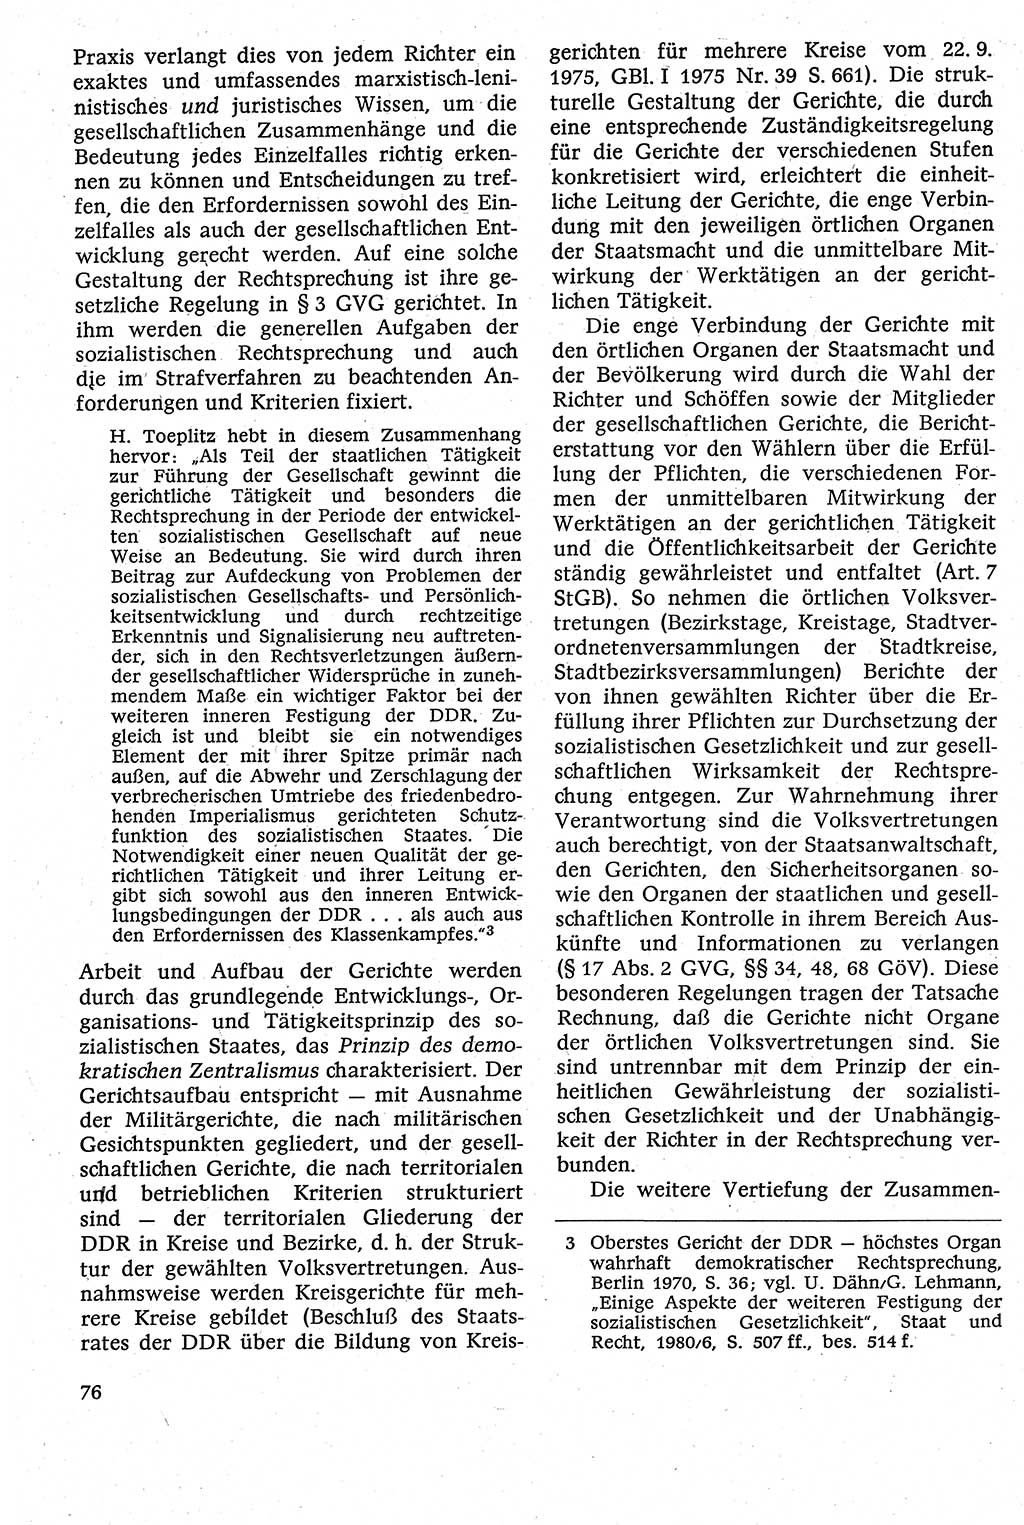 Strafverfahrensrecht [Deutsche Demokratische Republik (DDR)], Lehrbuch 1982, Seite 76 (Strafverf.-R. DDR Lb. 1982, S. 76)